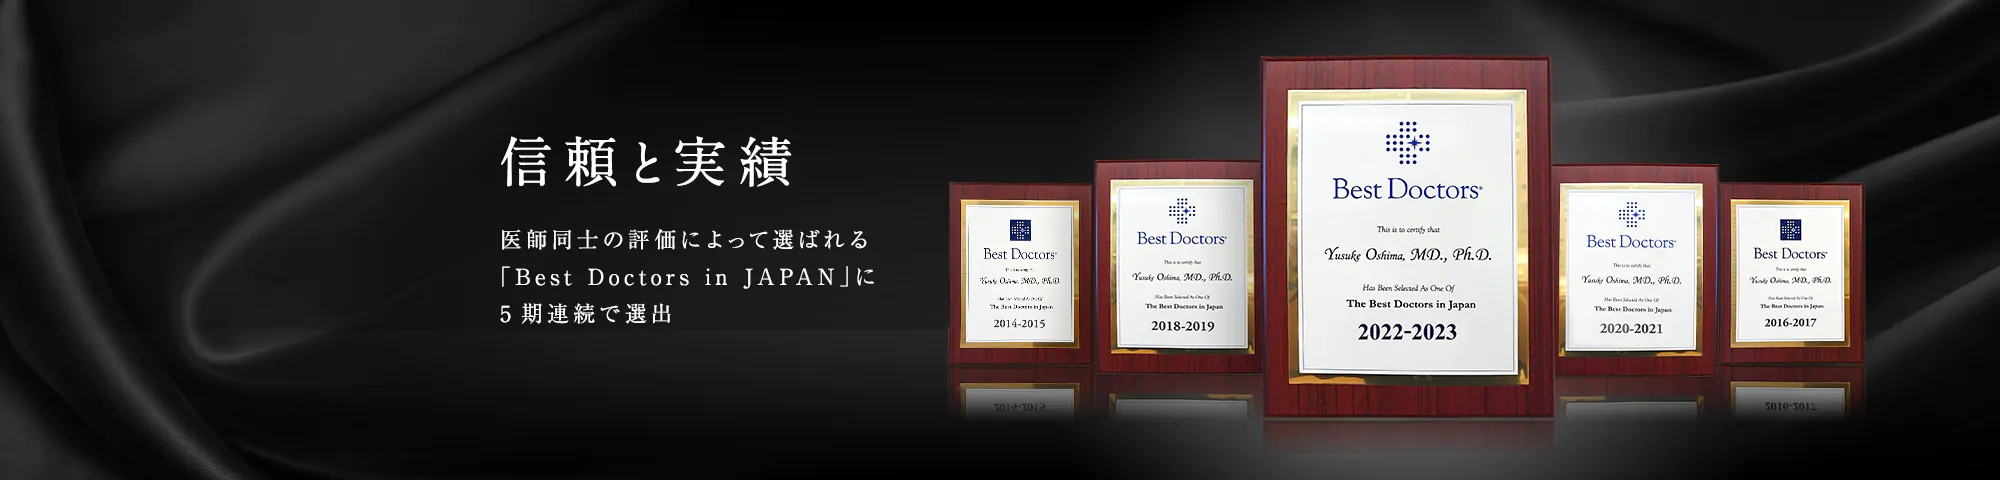 信頼と実績　医師同士の評価によって選ばれる 「Best Doctors in JAPAN」に5期連続で選出